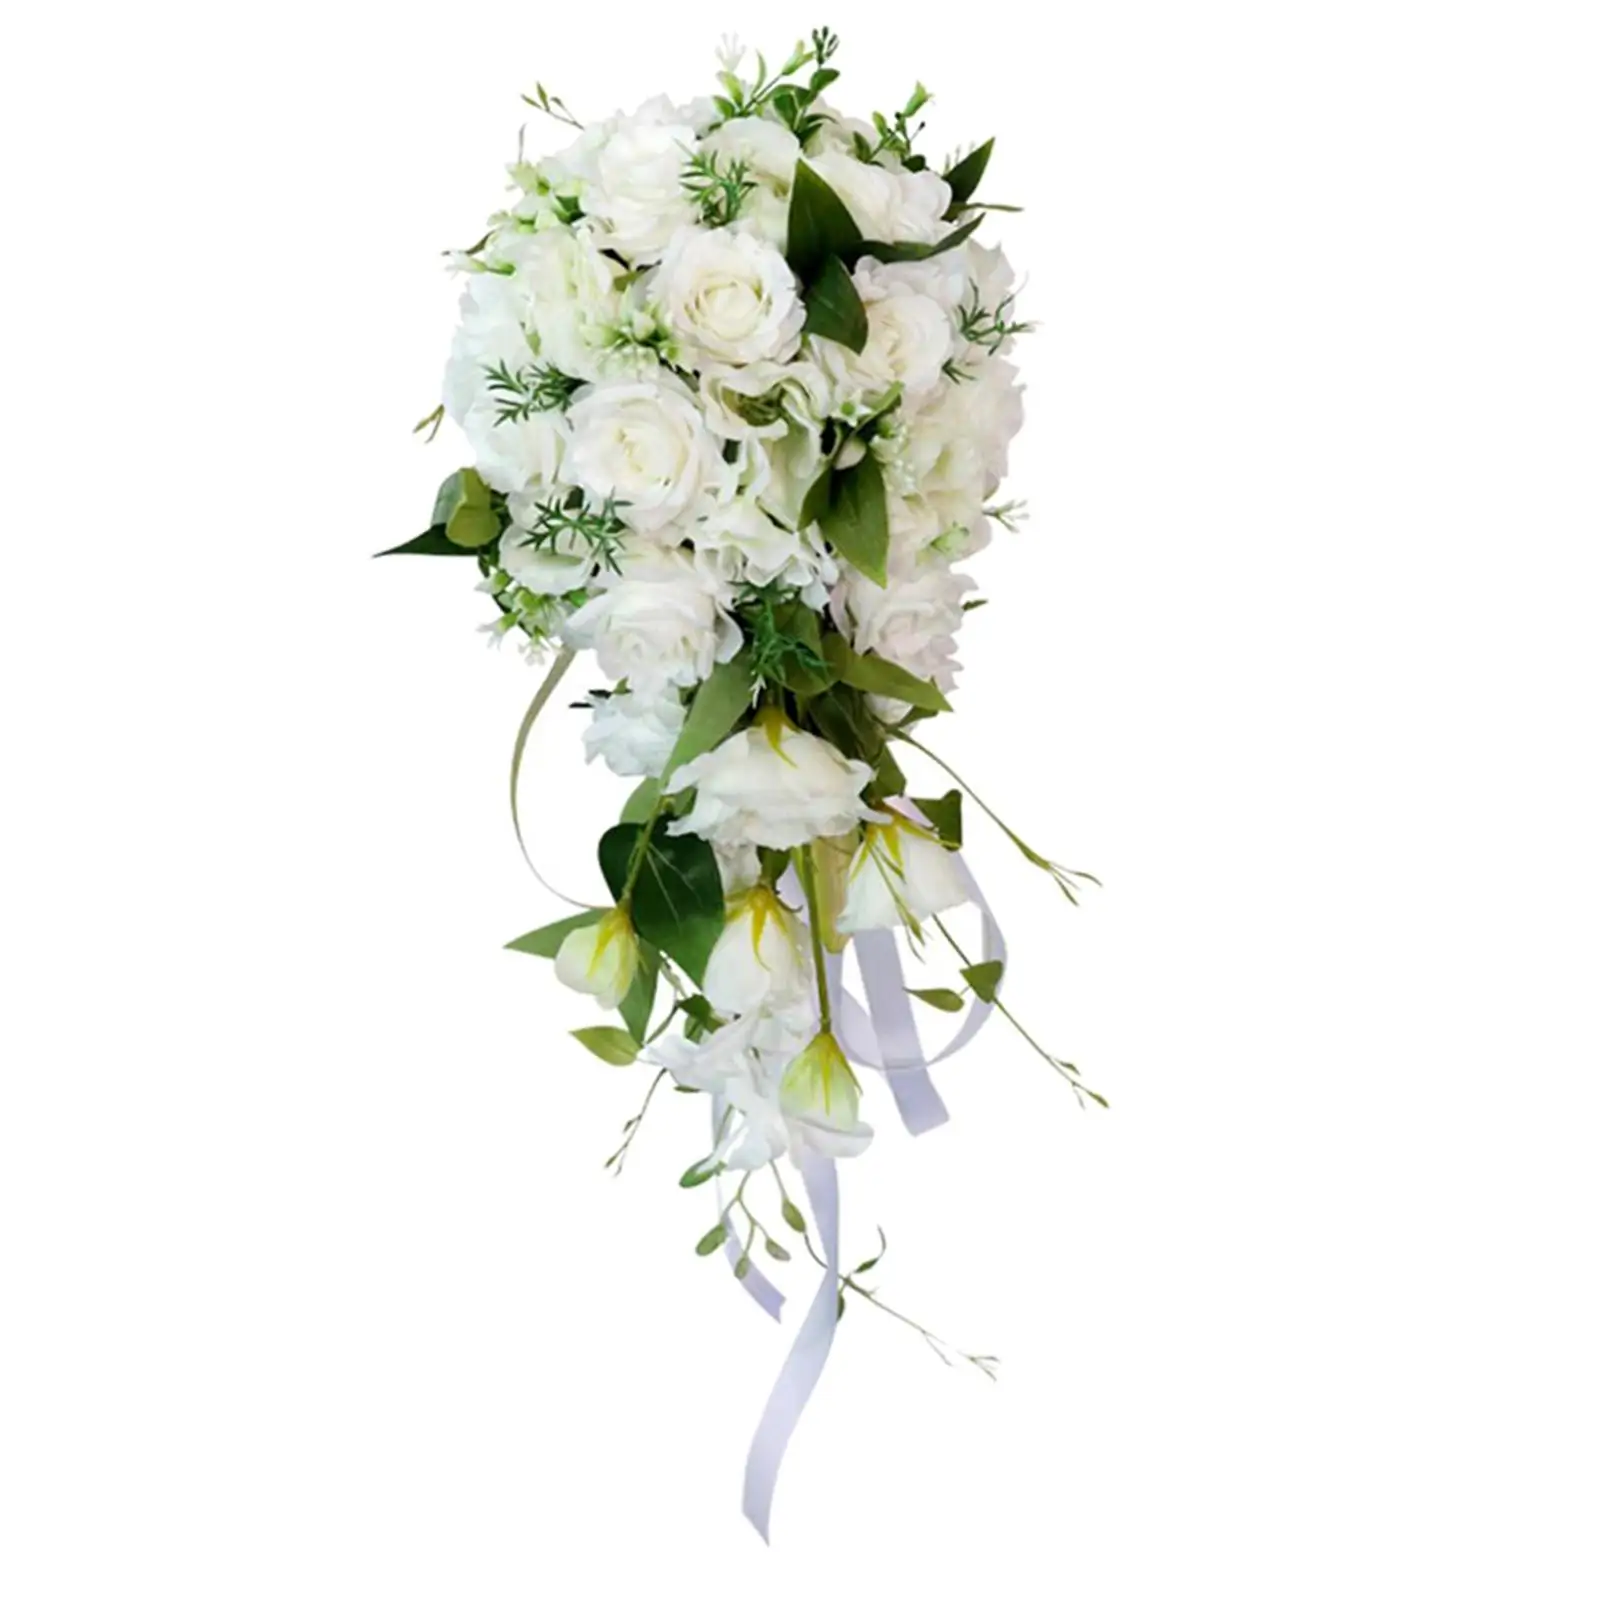 Romantic Bridal Bouquet Wedding Bouquet Artificial Flowers Silk Flowers